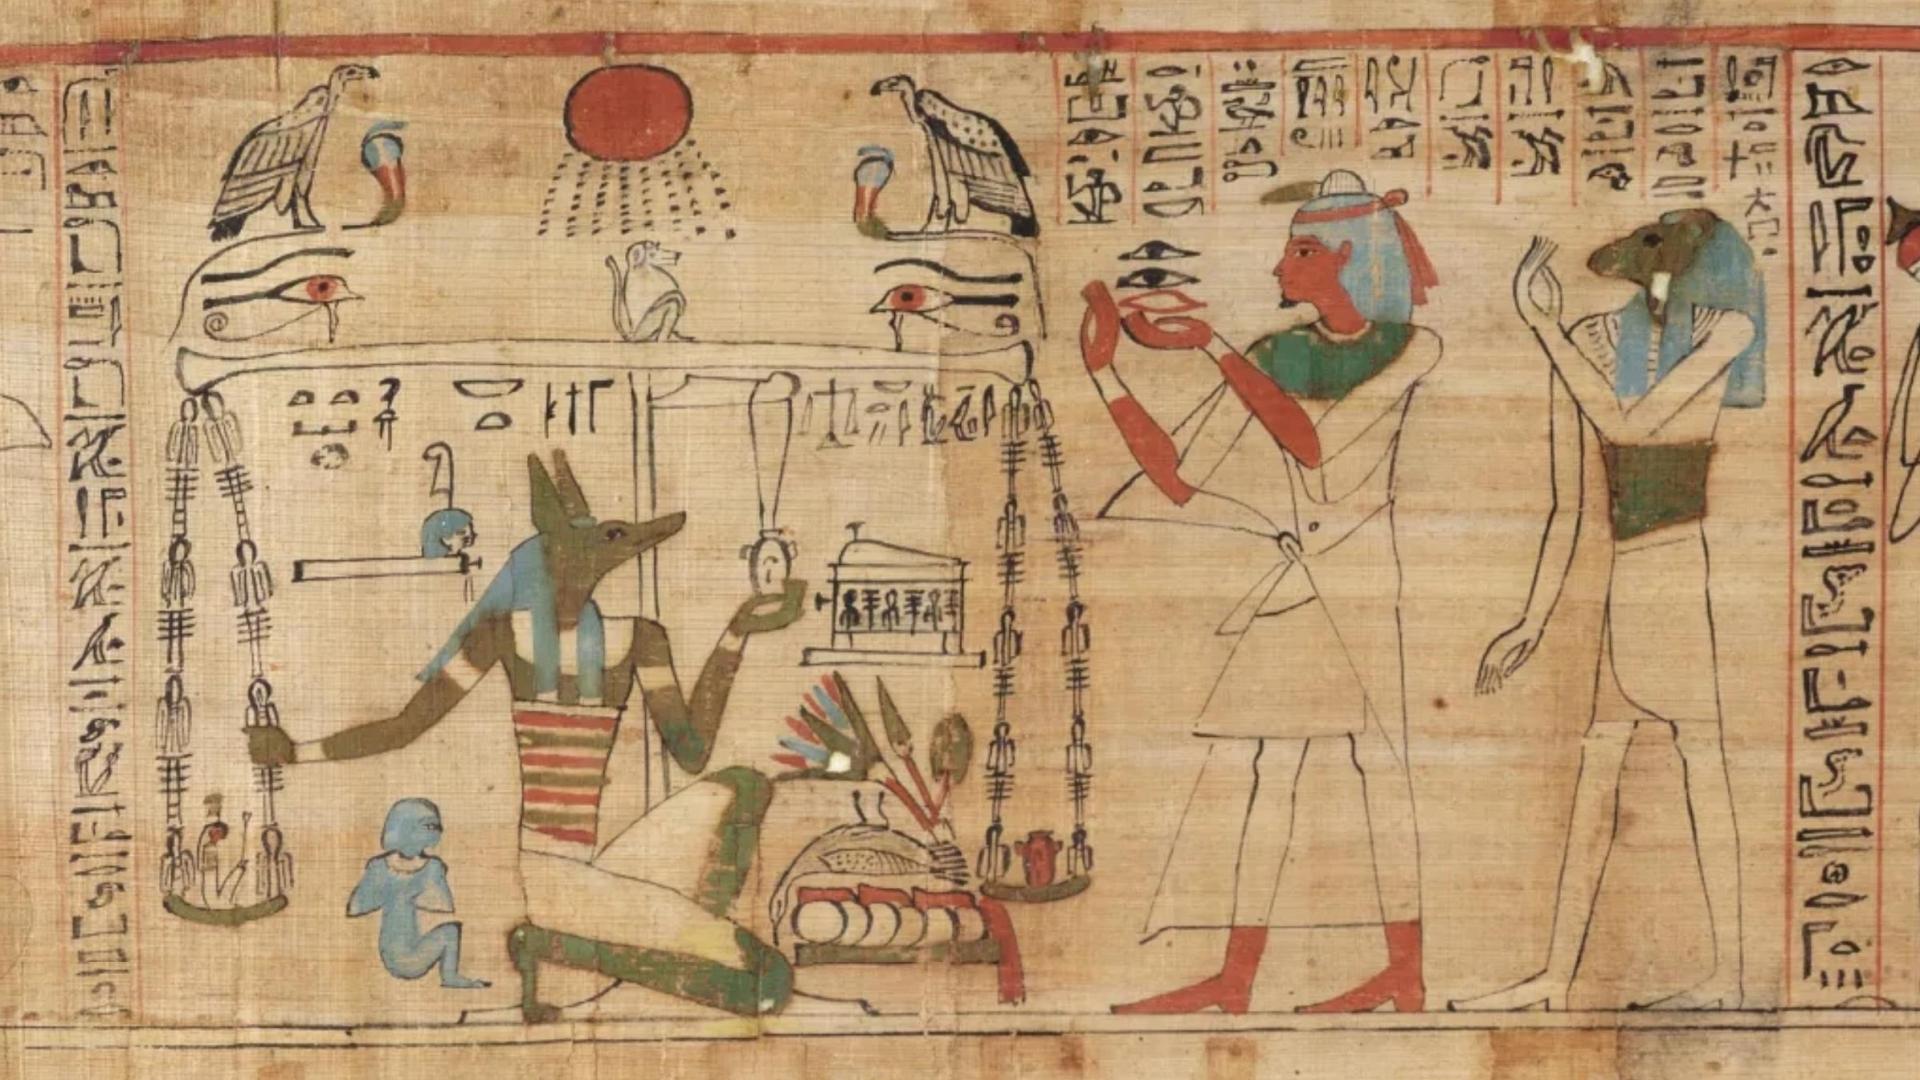 亡灵之书 2300年前古埃及《亡灵之书》的碎布，相隔半个世界被拼凑在一起